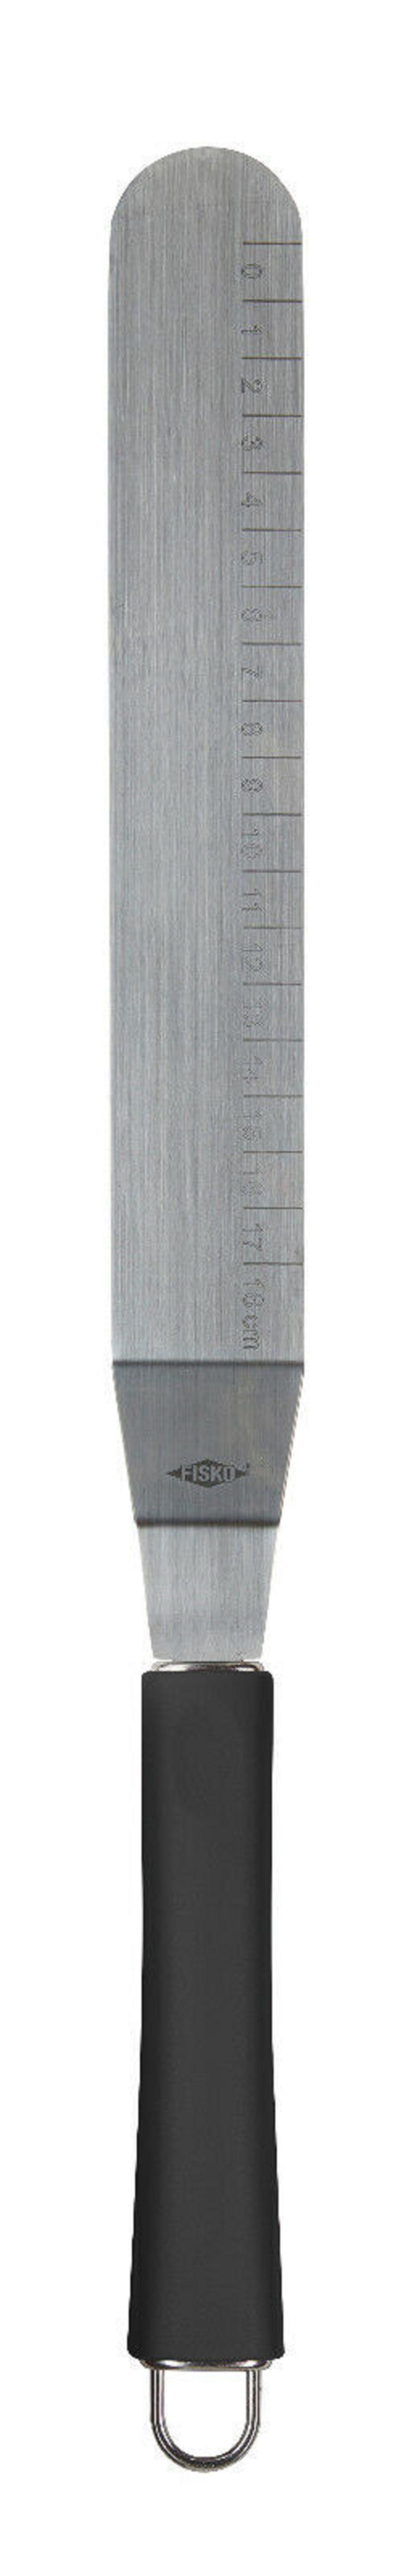 ALPFA Tortenmesser Edelstahl Glasurmesser Streichpalette Schaber Spachtel schwarz 32 cm, aus rostfreiem Edelstahl